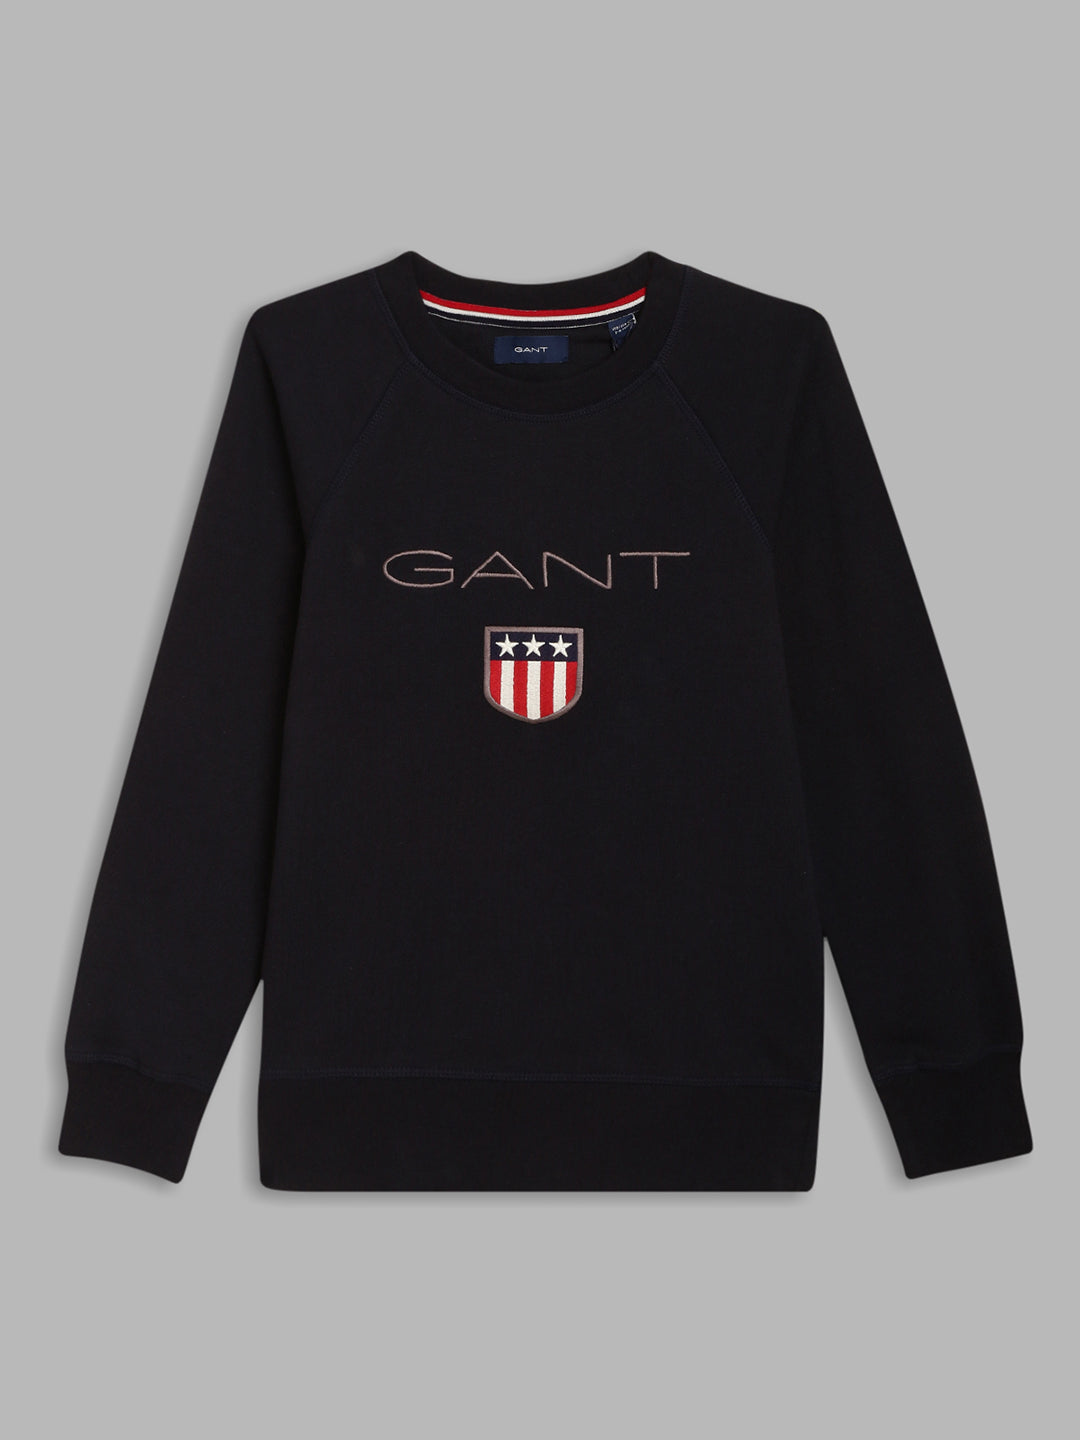 Gant Boys Navy Blue Solid Round Neck Sweatshirt